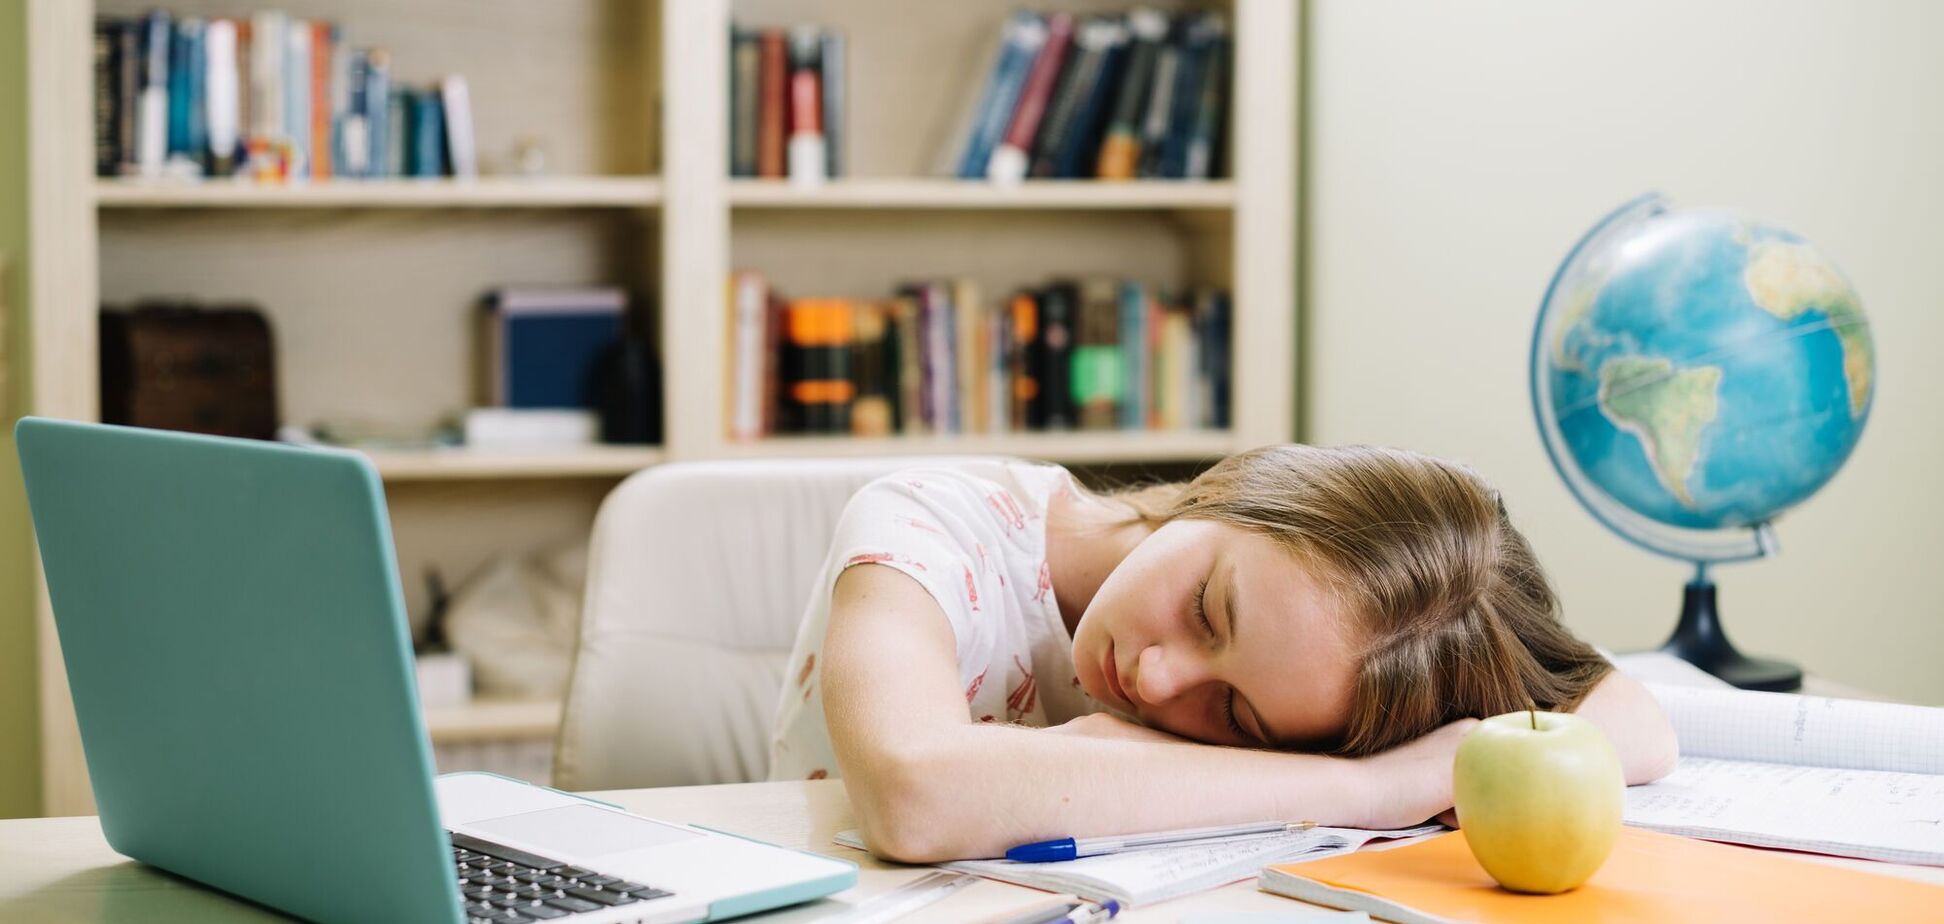 Вчені виявили несподіваний зв'язок між популярністю в школі та тривалістю сну